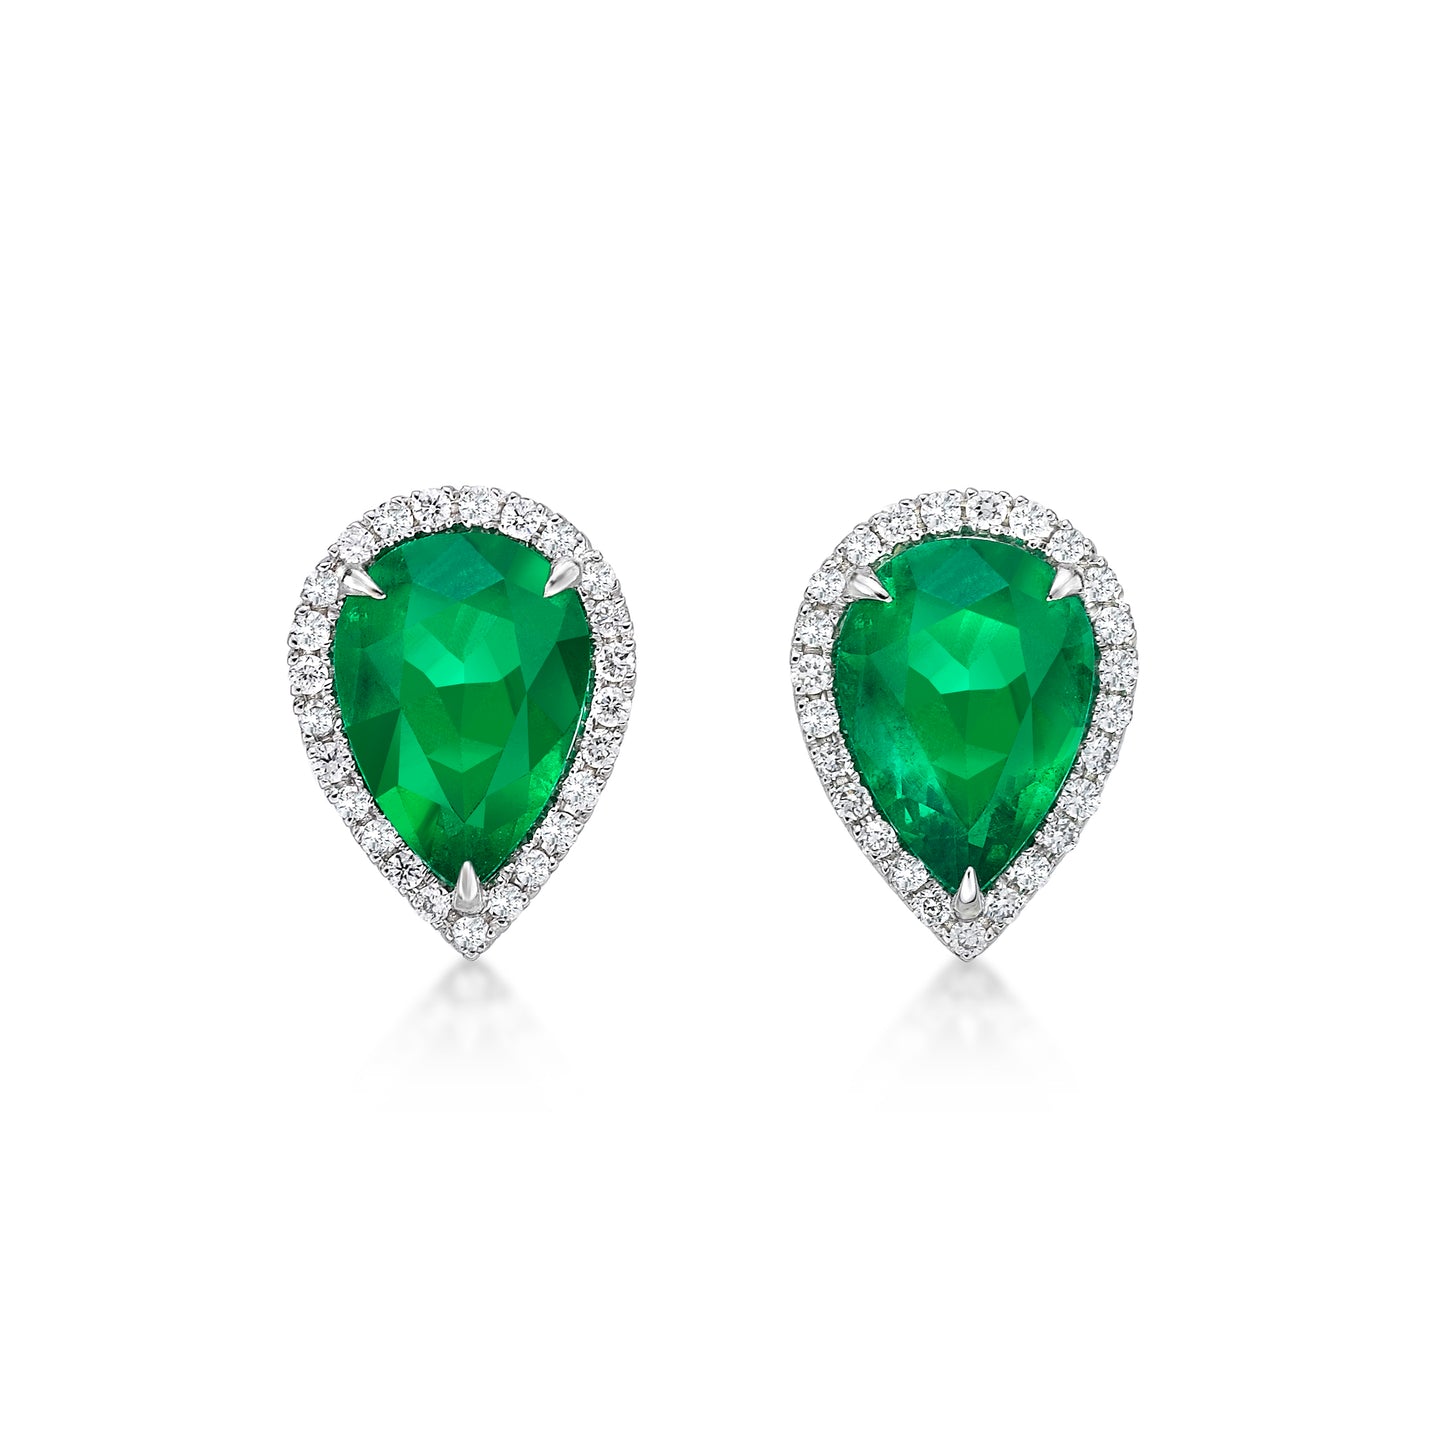 梨形祖母绿钻石耳环